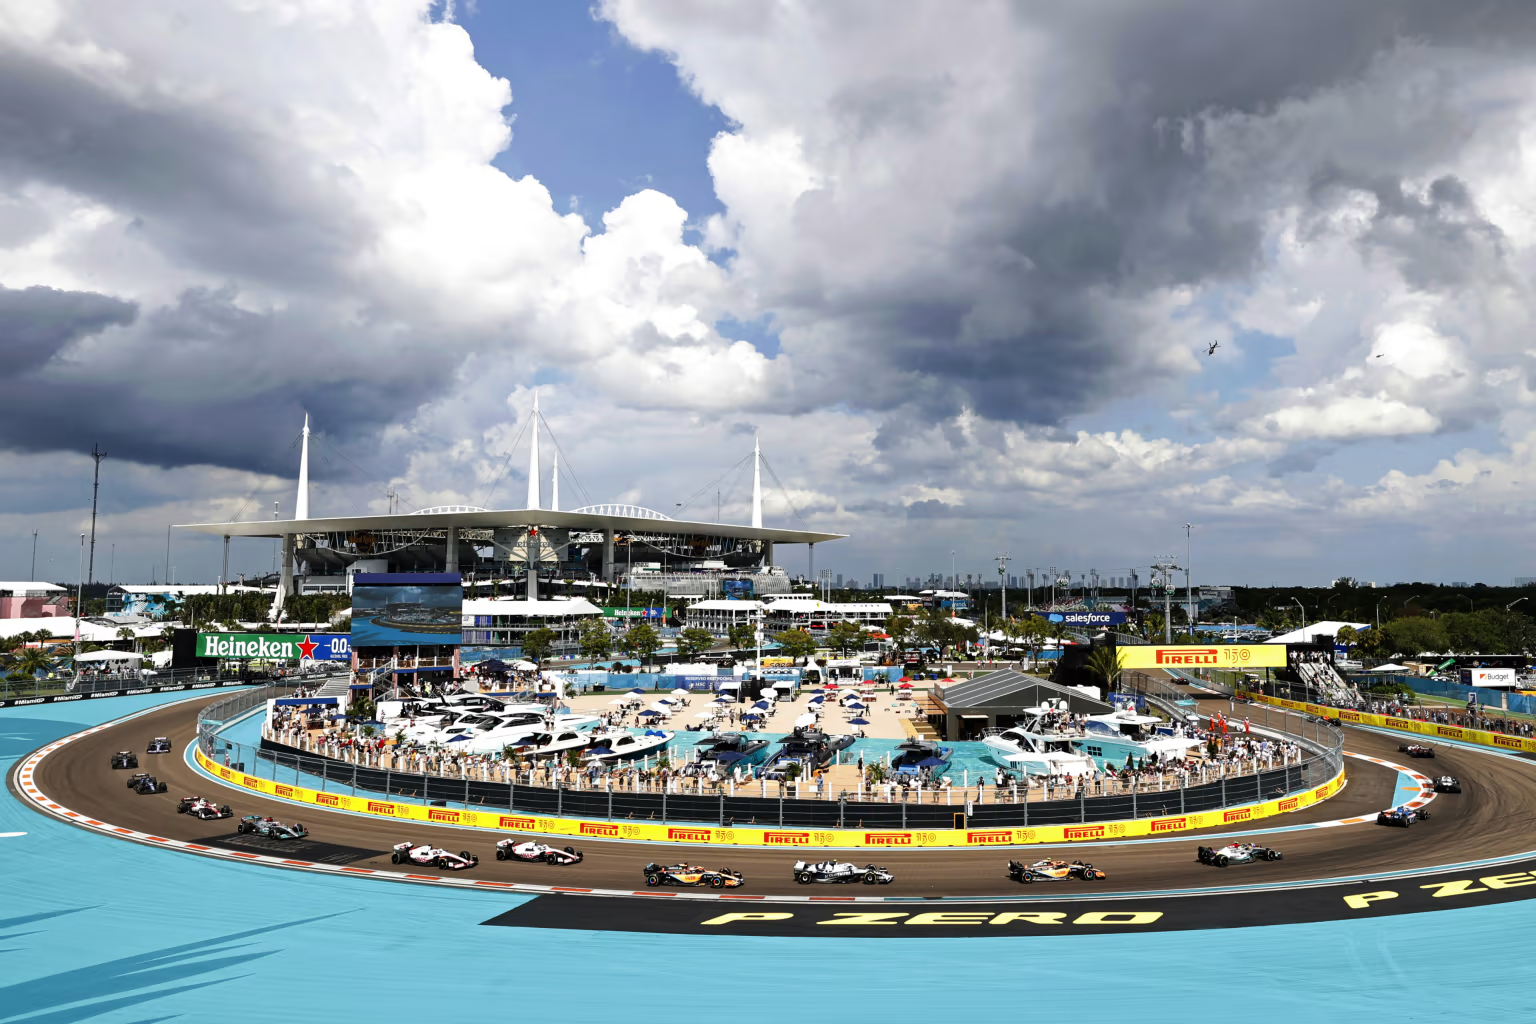 Miami Grand Prix